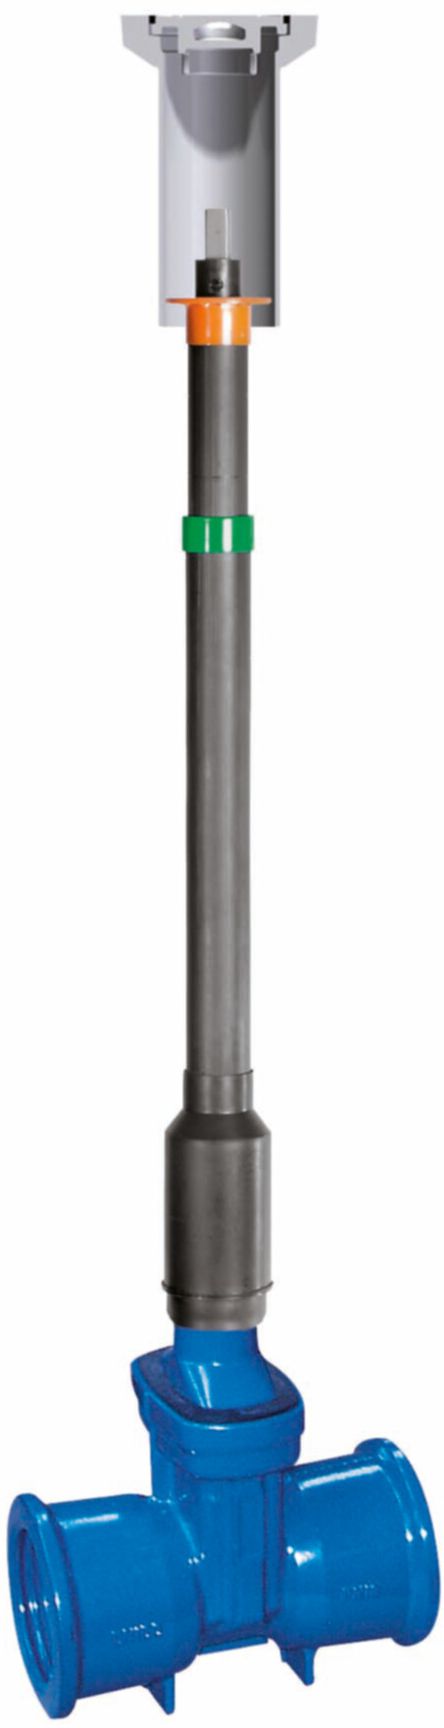 Teleskop-Einbaugarnitur Fig. 6895 L0 DN 200 GT 1.145- 1.31 m - Von Roll Armaturen